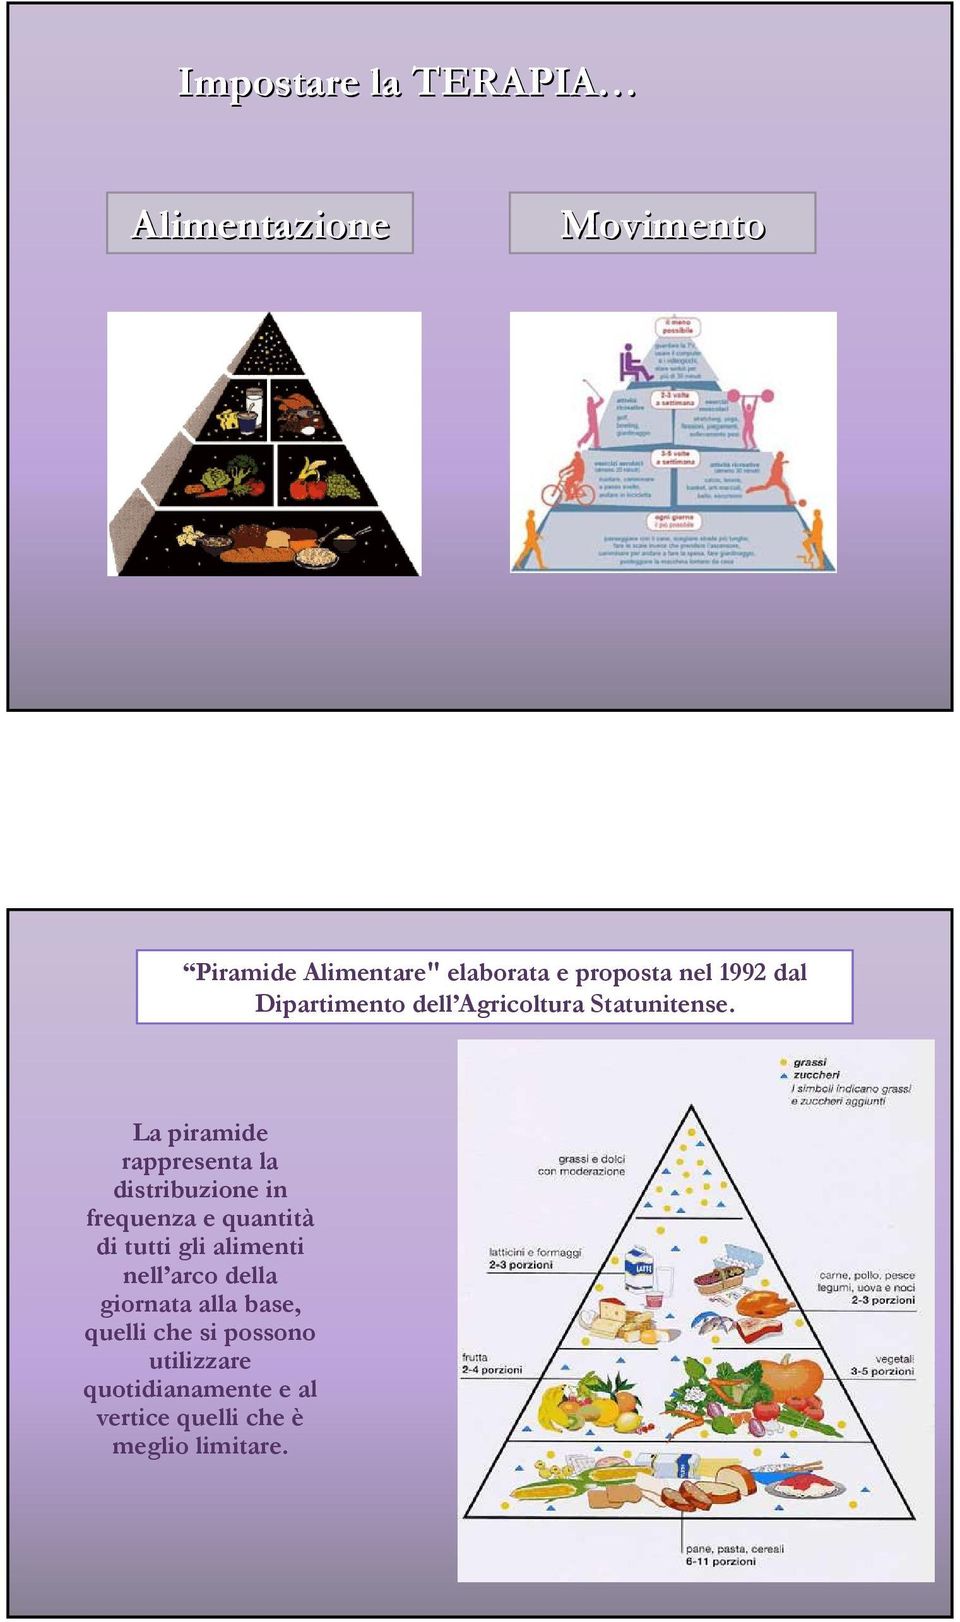 La piramide rappresenta la distribuzione in frequenza e quantità di tutti gli alimenti